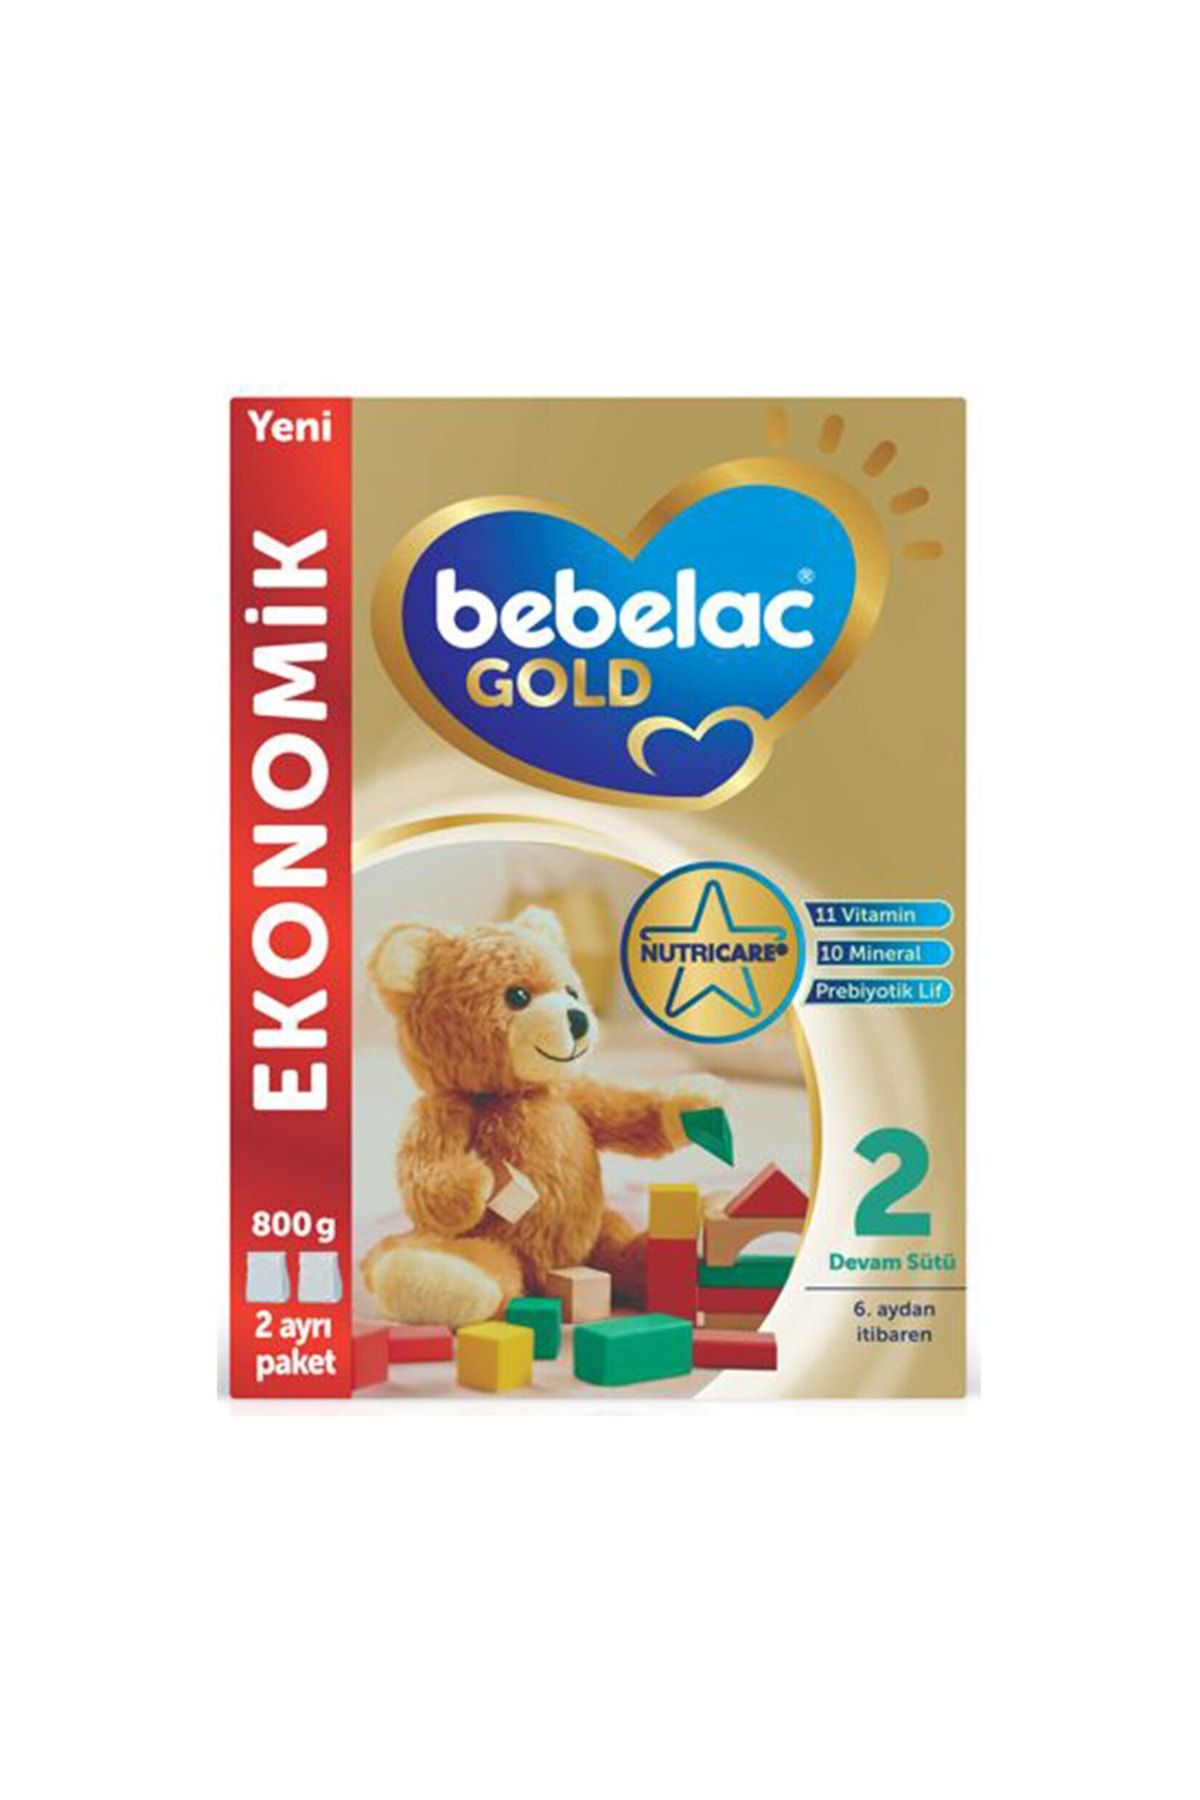 Bebelac Gold Devam Sütü 2 800g